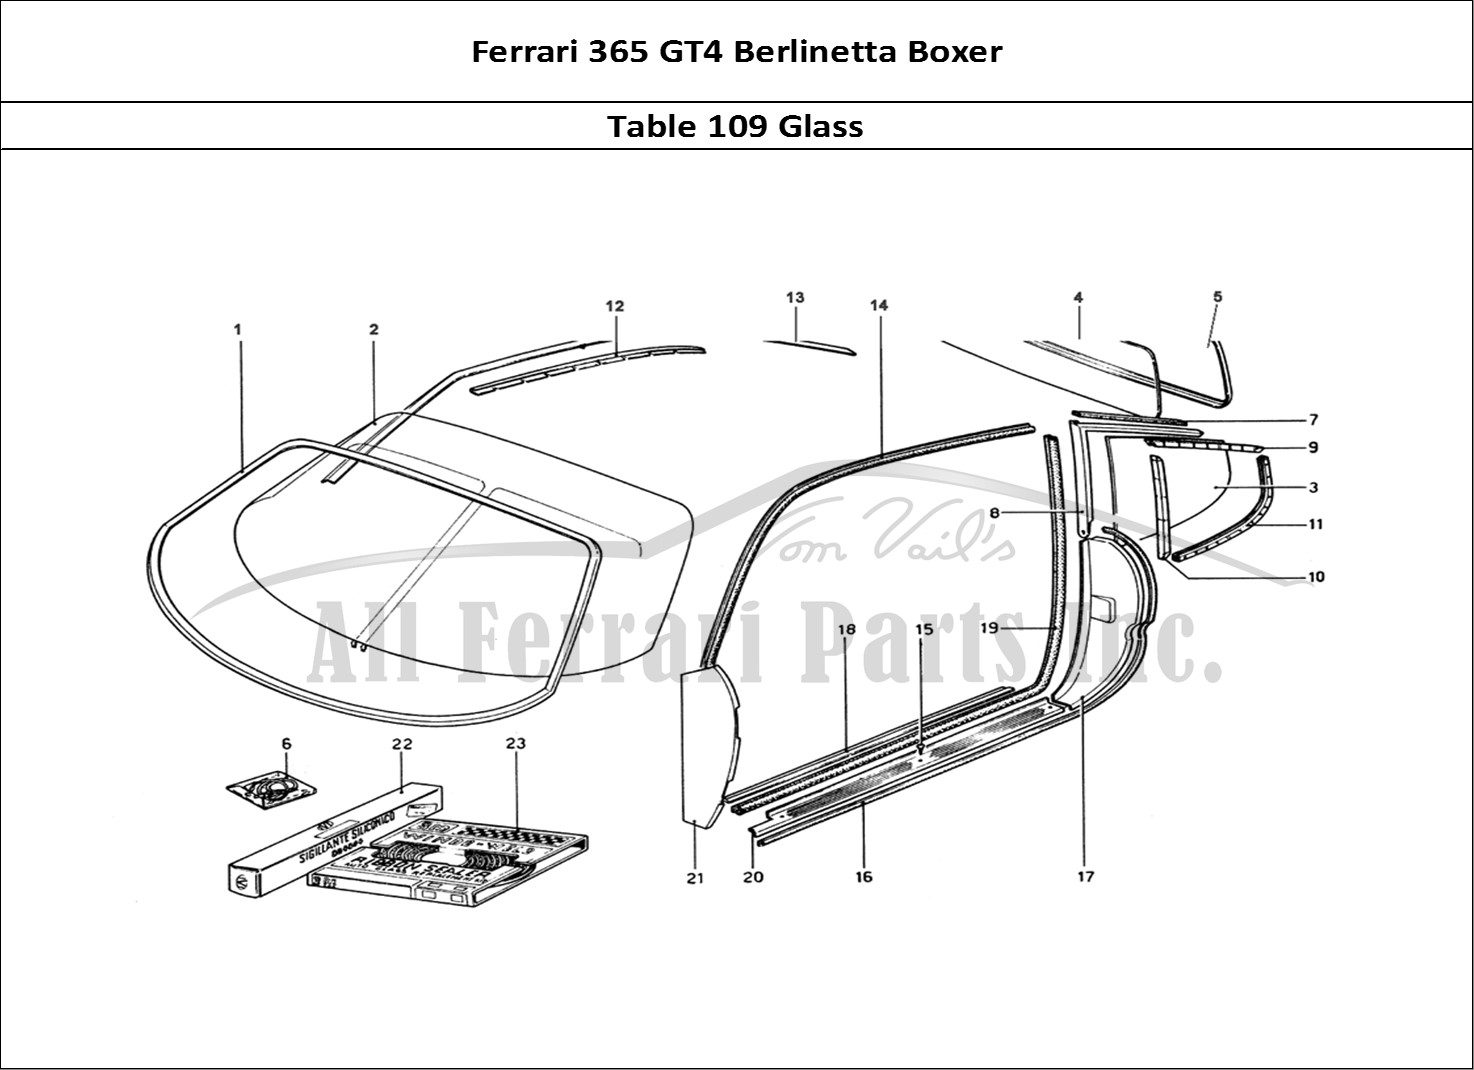 Ferrari Parts Ferrari 365 GT4 Berlinetta Boxer Page 109 Glasses